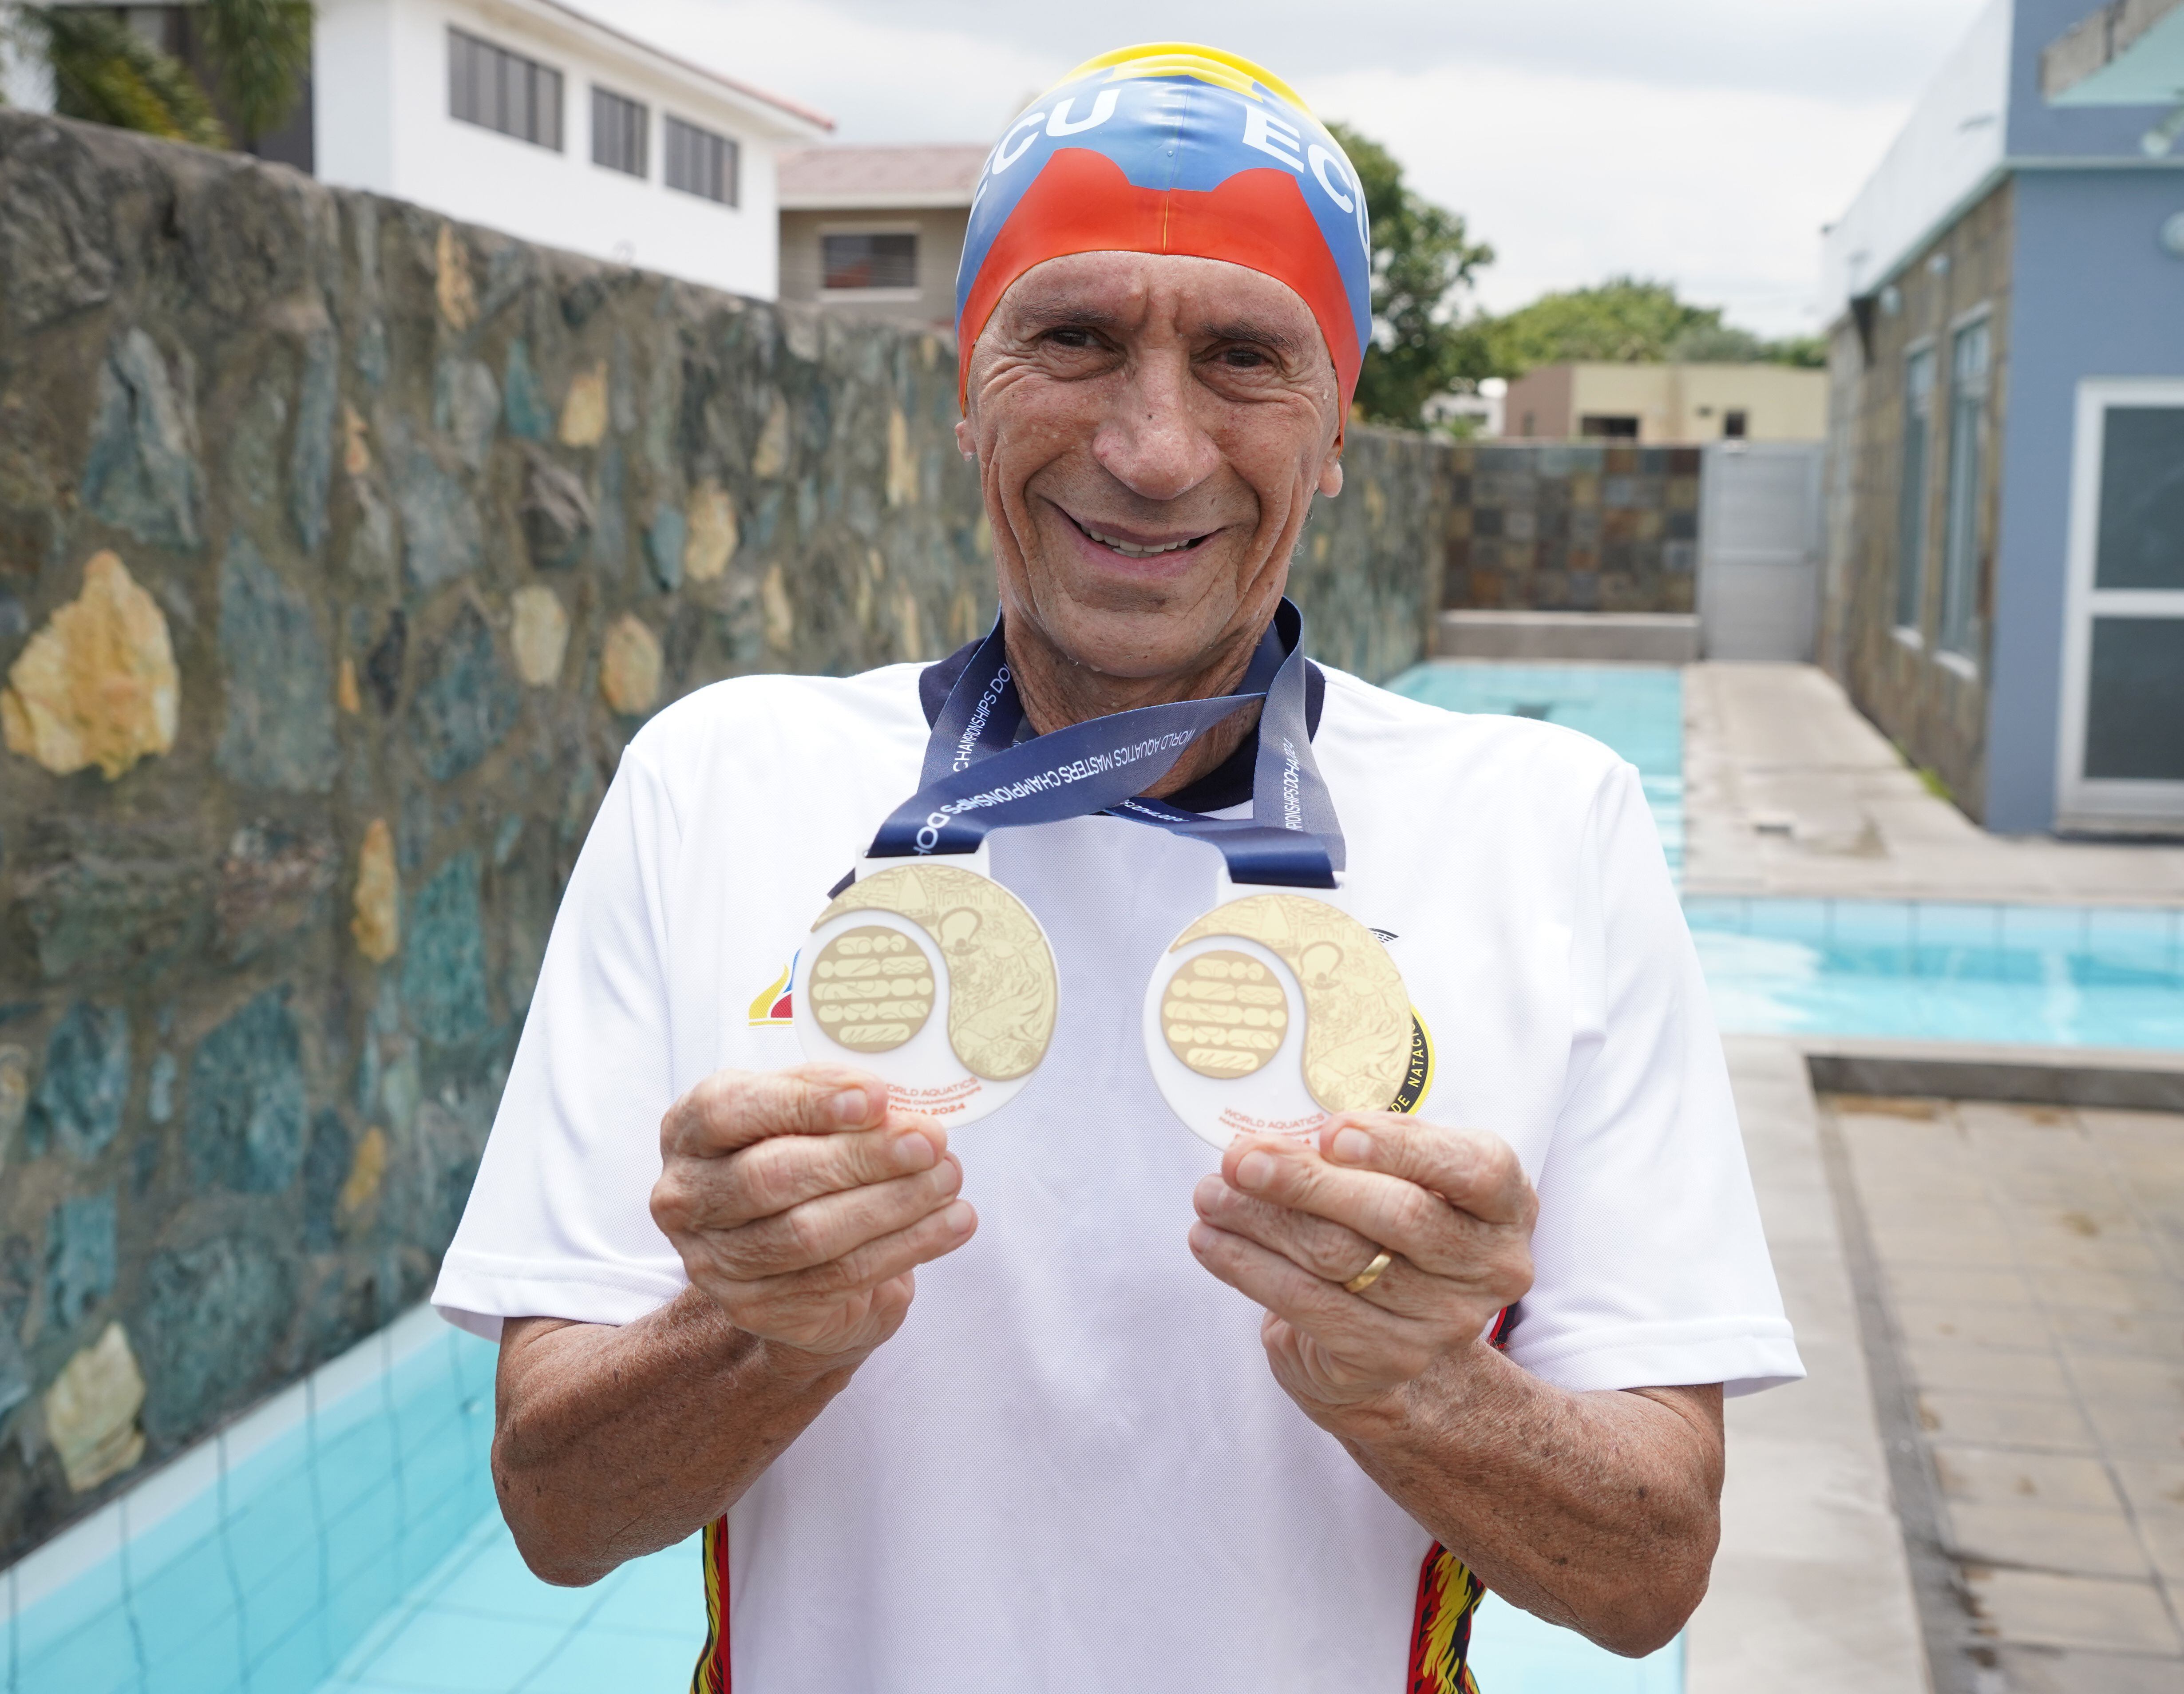 Bajaña es el primer bicampeón mundial de natación que tiene Emelec porque en febrero pasado se colgó la presea dorada en los 800 metros libres.